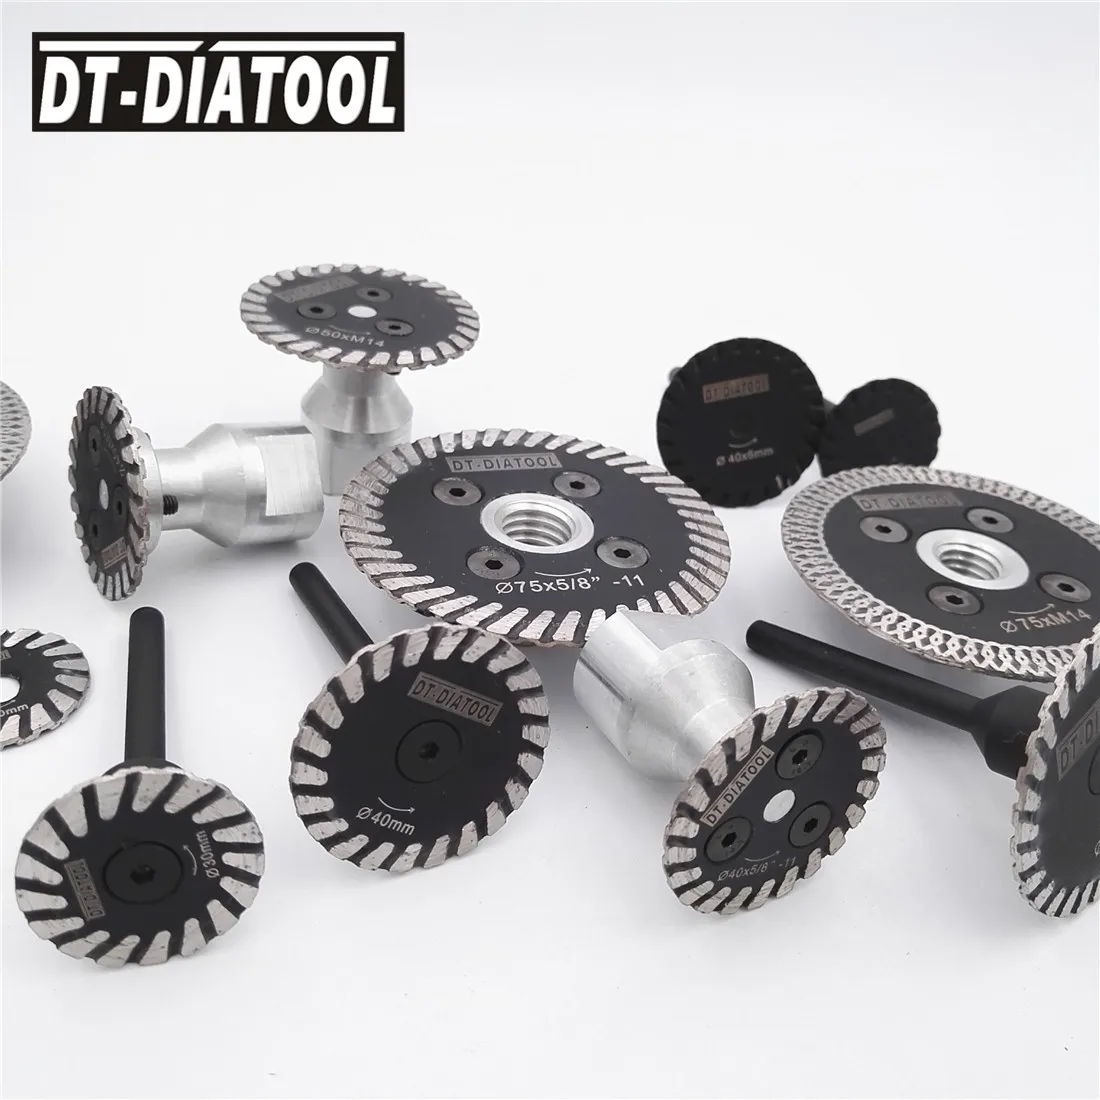 DT-DIATOOL 1 шт. диаметр 75 мм Горячий прессованный мини резьба диск турбоалмазный Сегментированная гравировка пилы со съемным фланцем 5/8-11